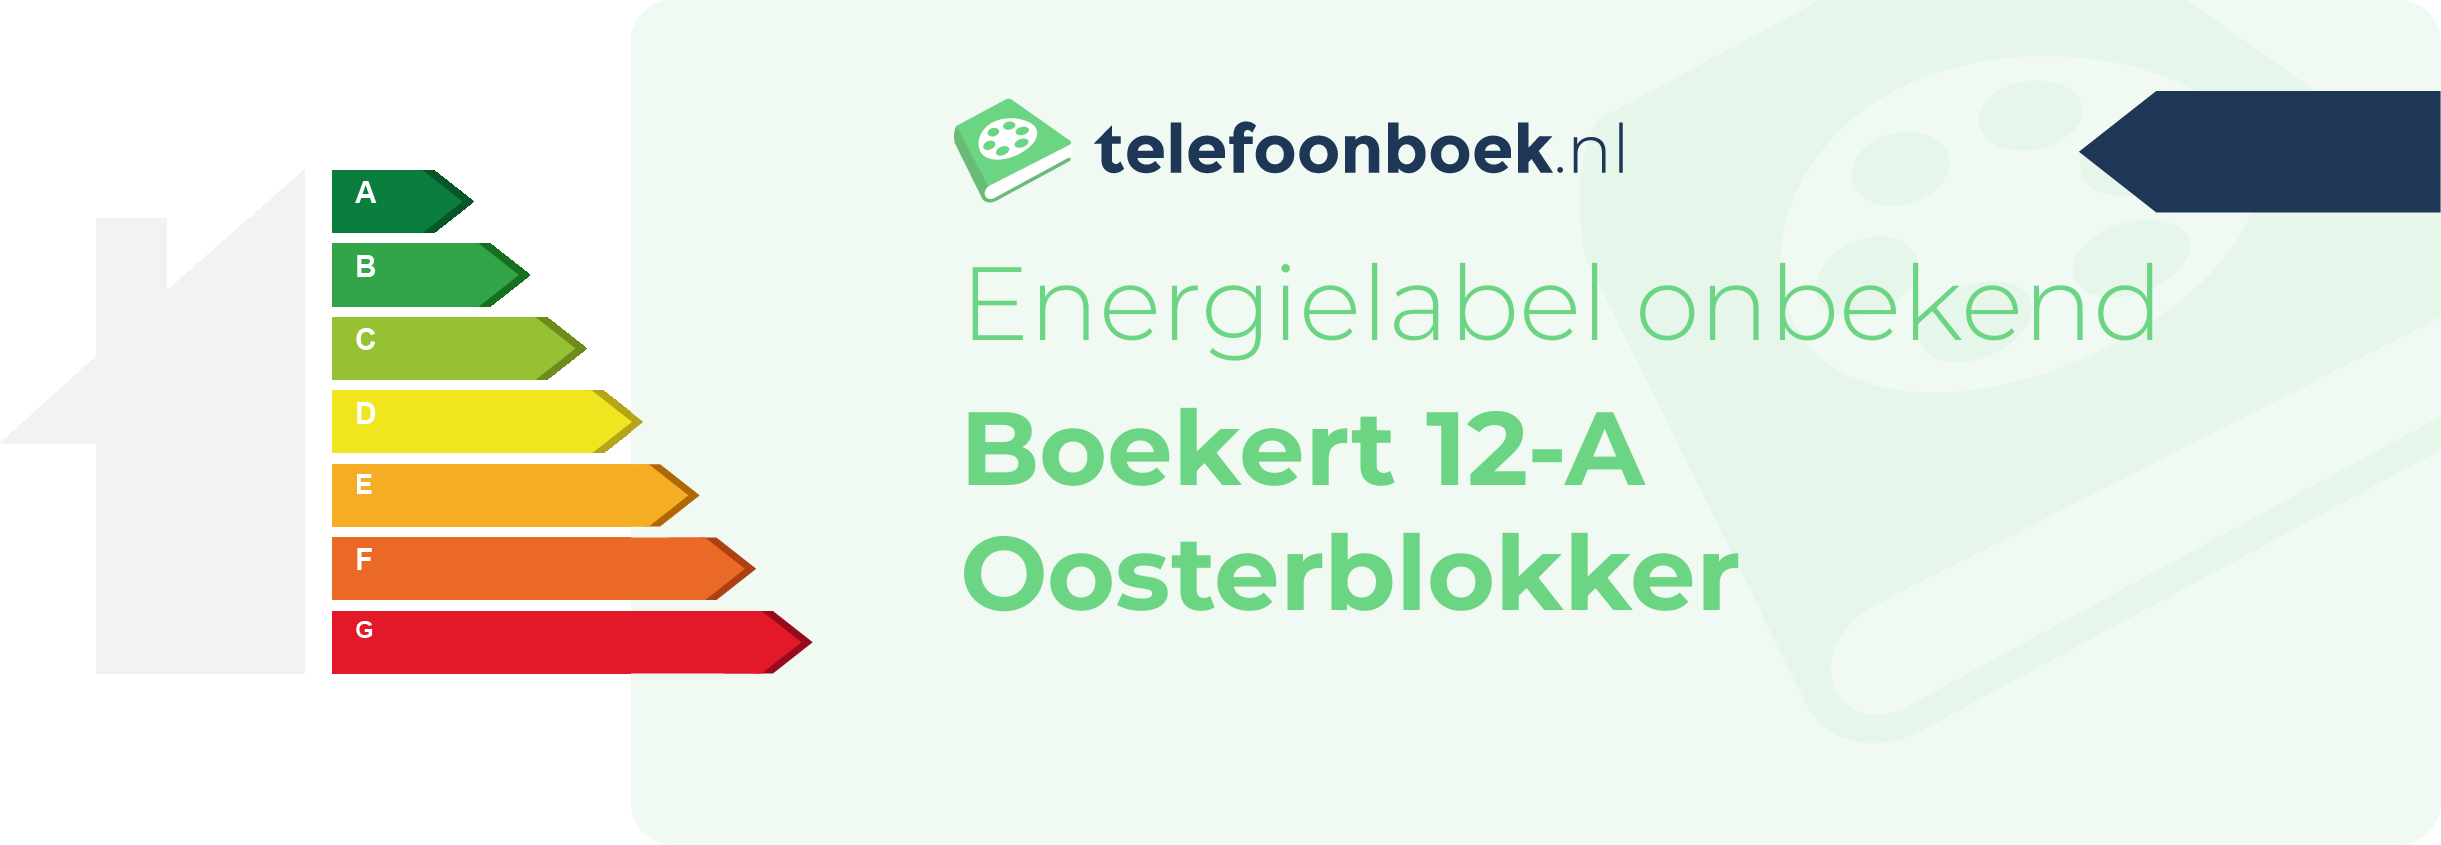 Energielabel Boekert 12-A Oosterblokker